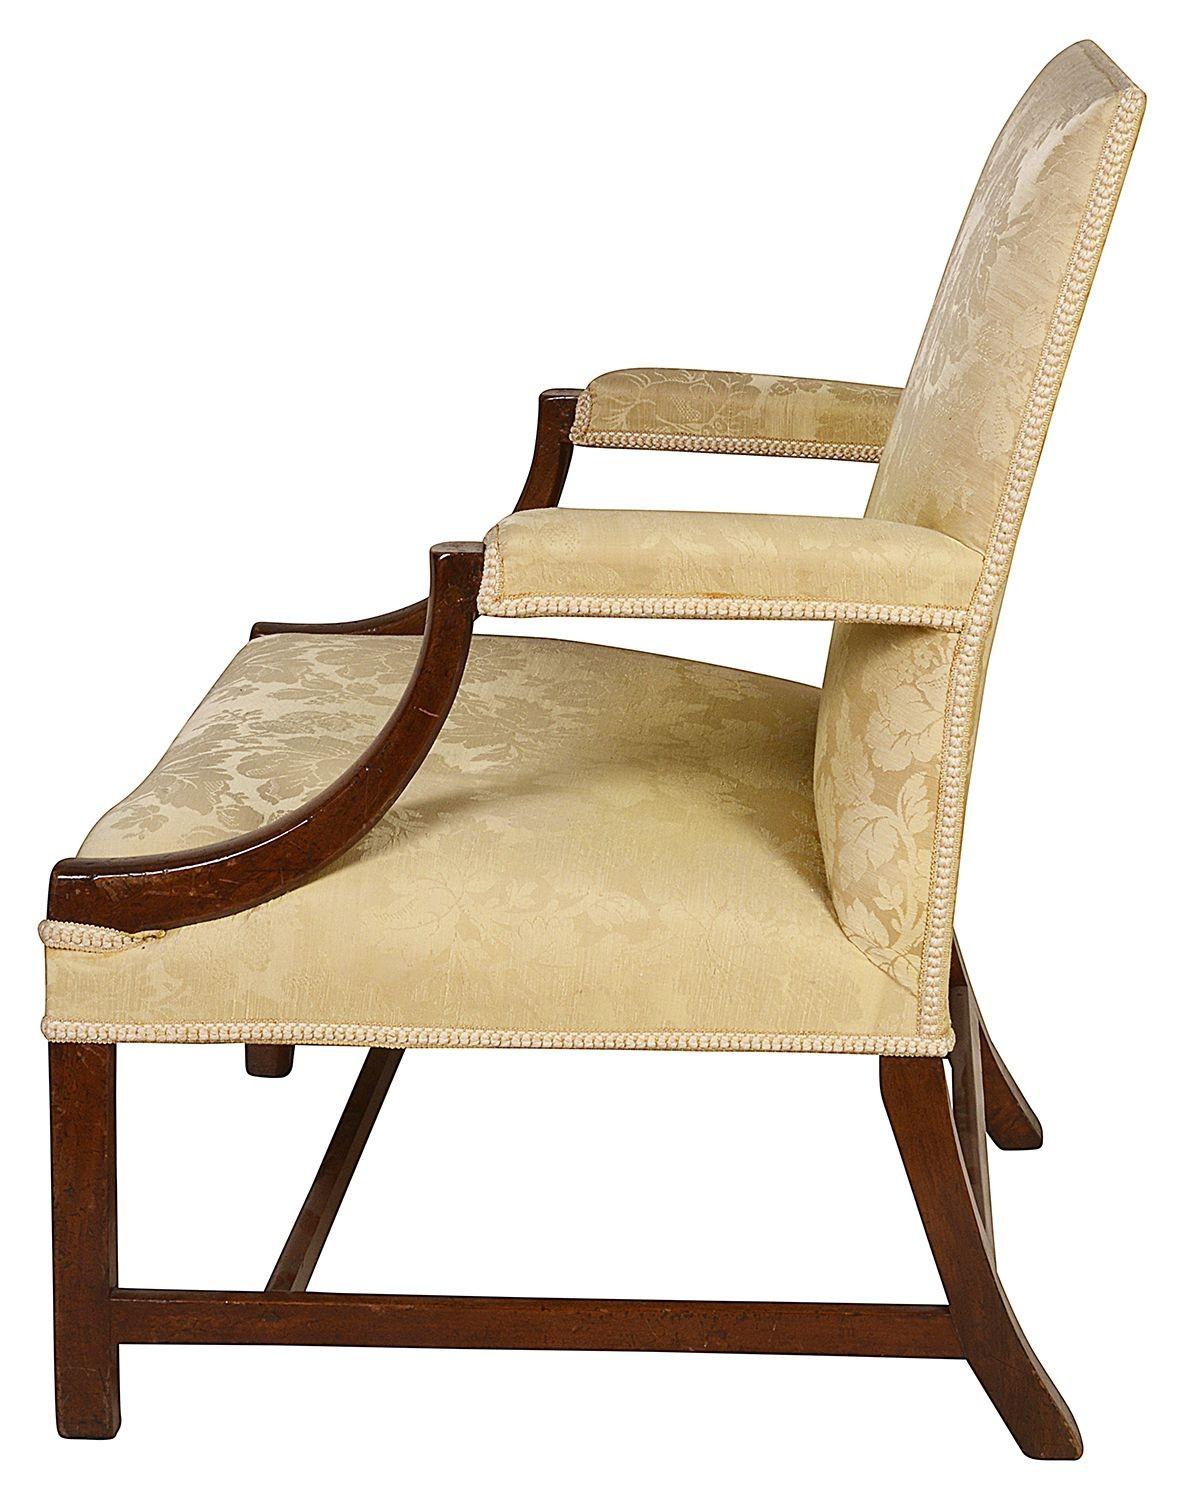 Ein guter Qualität 18. Jahrhundert Mahagoni Gainsborough Arm Stuhl. Mit gelbem Damastseidenstoff an Rücken, Sitz und Armlehnen. Beine mit quadratischem Querschnitt, verbunden durch H-Bahren.

Charge 67 61312 DNCKZ